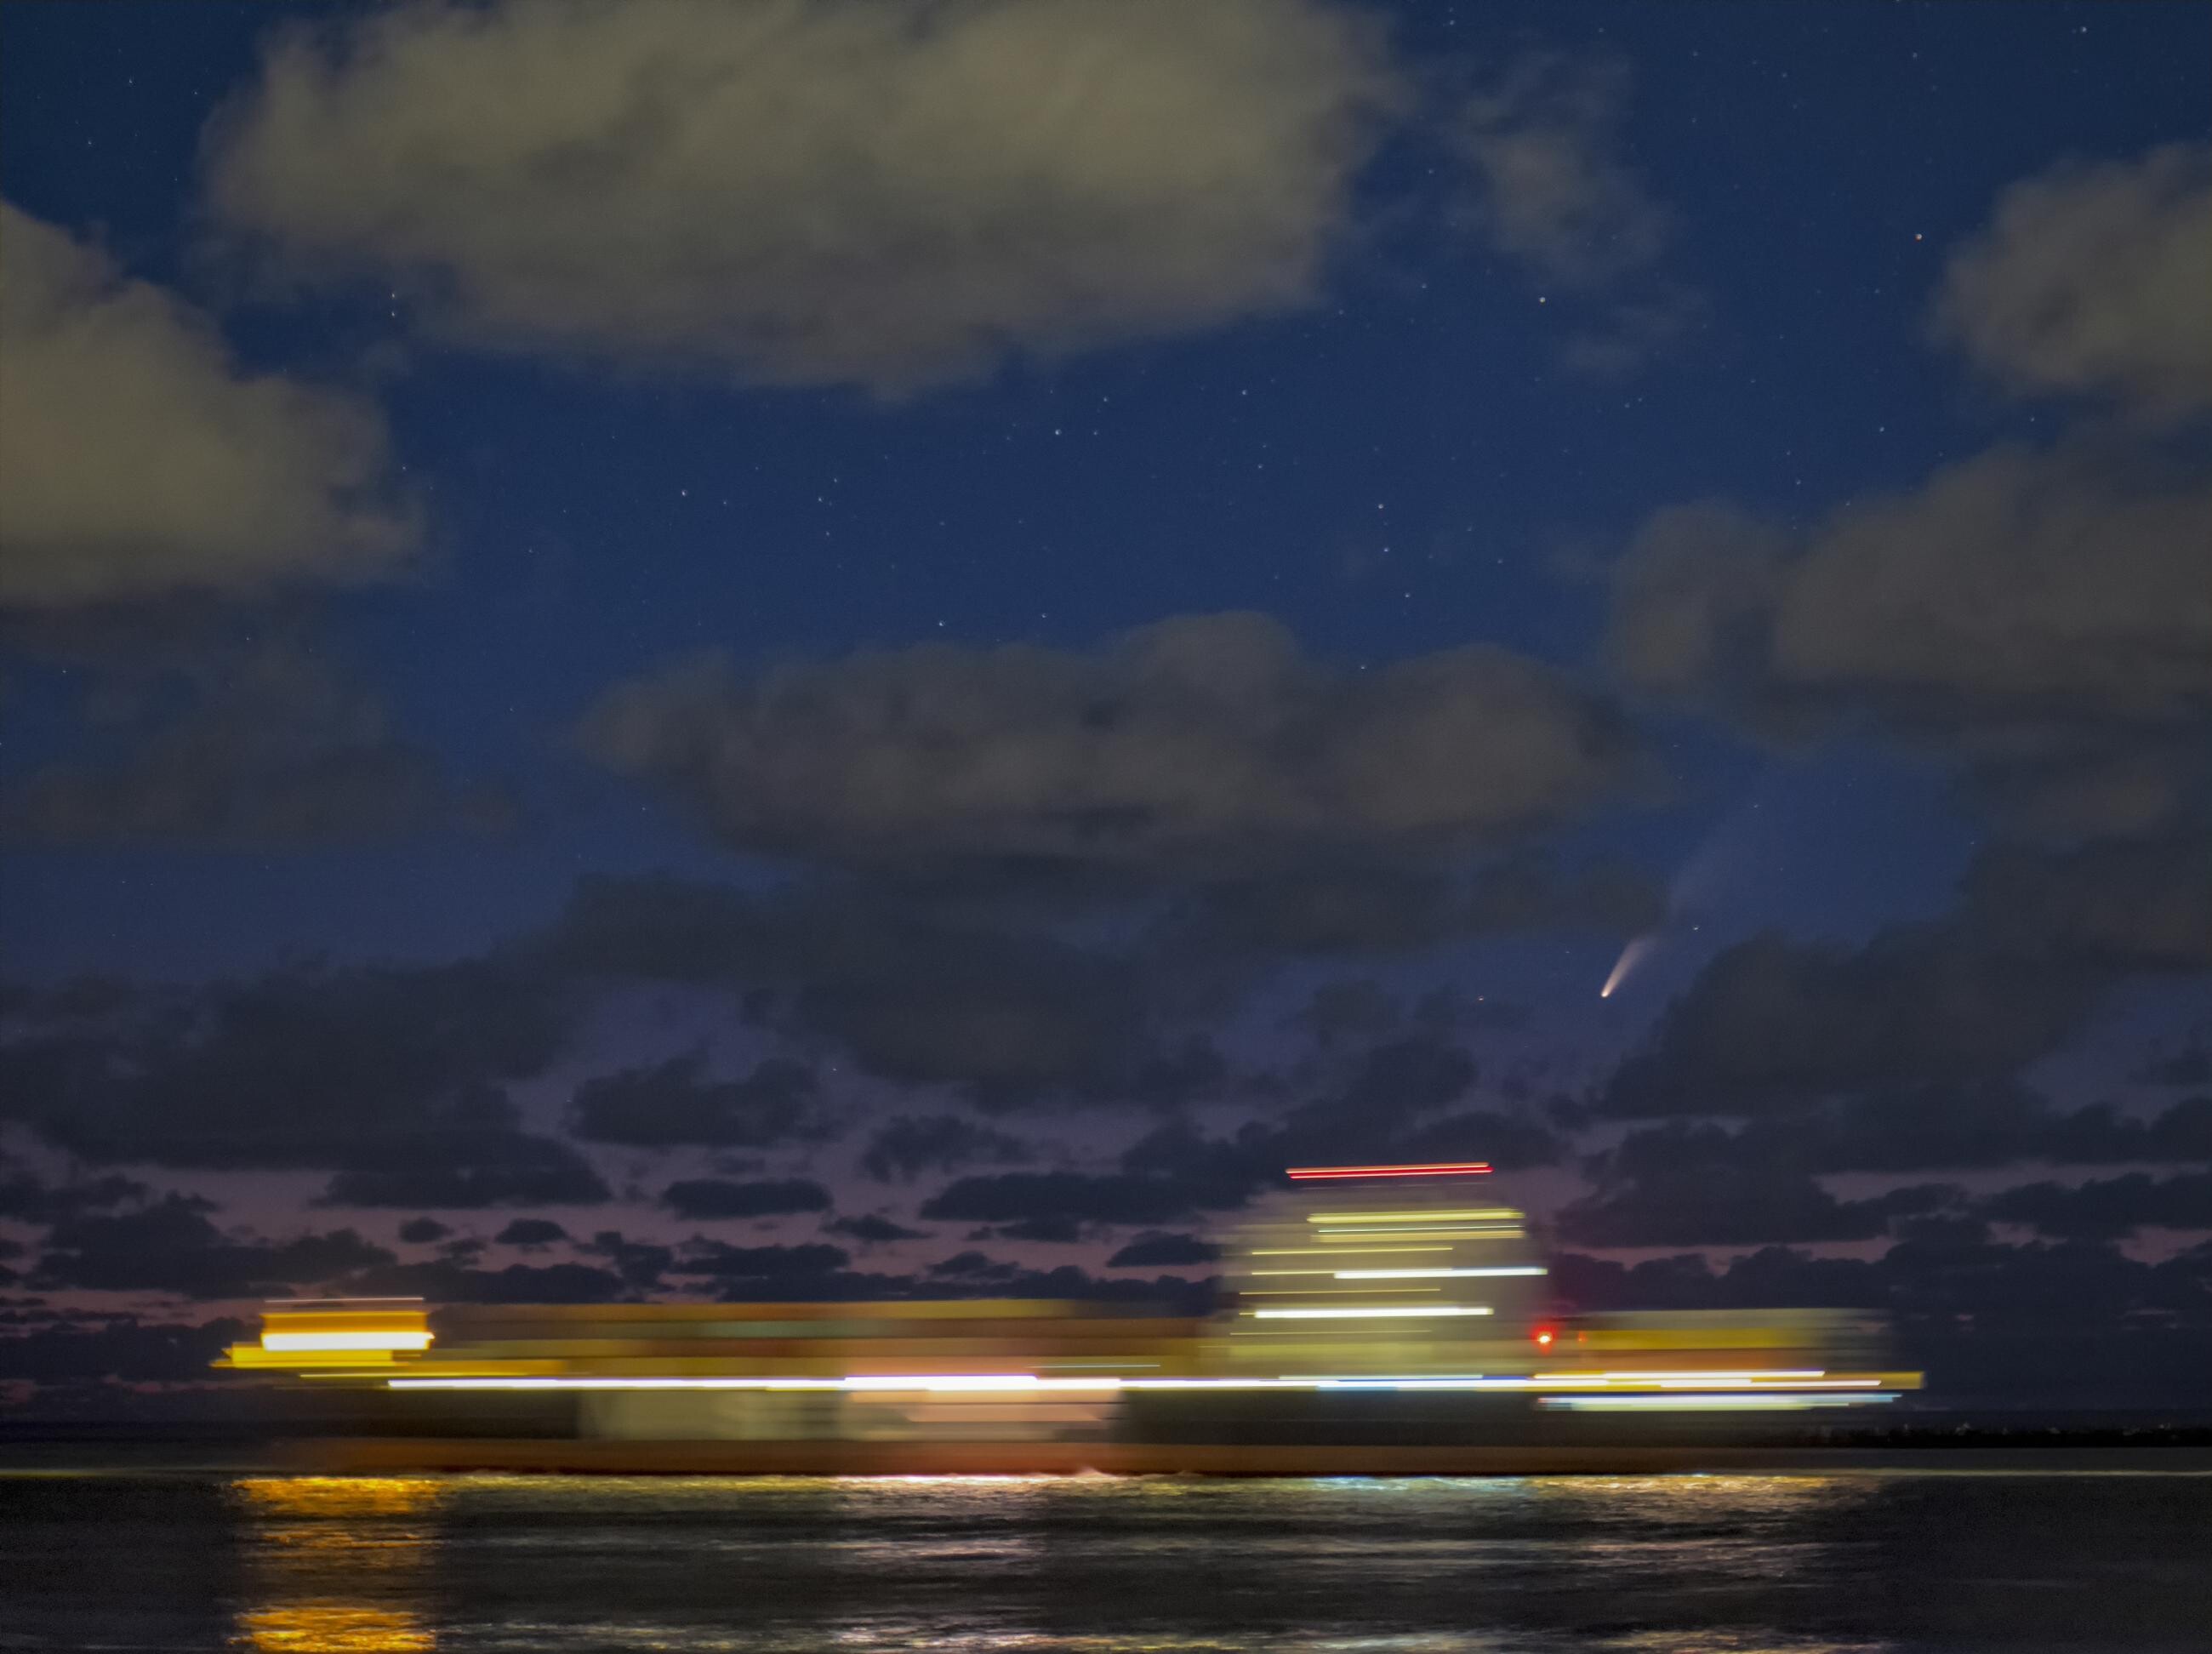 2 место в категории Люди и космос, 2021. Одинокий корабль под звёздами и комета NEOWISE. Снято в Южной Голландии, Нидерланды. Автор Андре ван дер Хувен